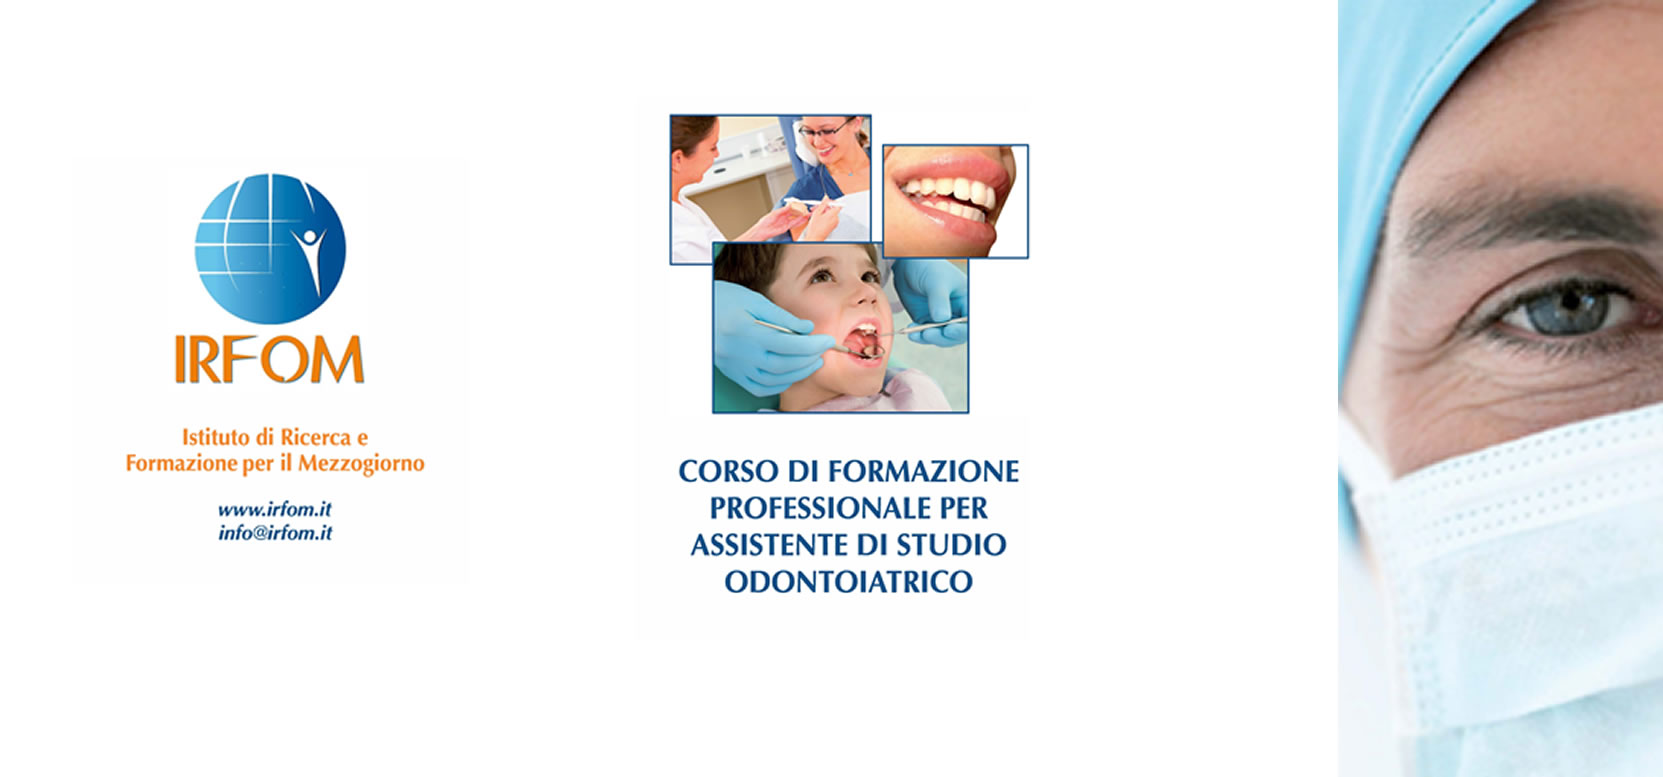 Corso di formazione professionale per Assistente di Studio Odontoiatrico – aprile 2019